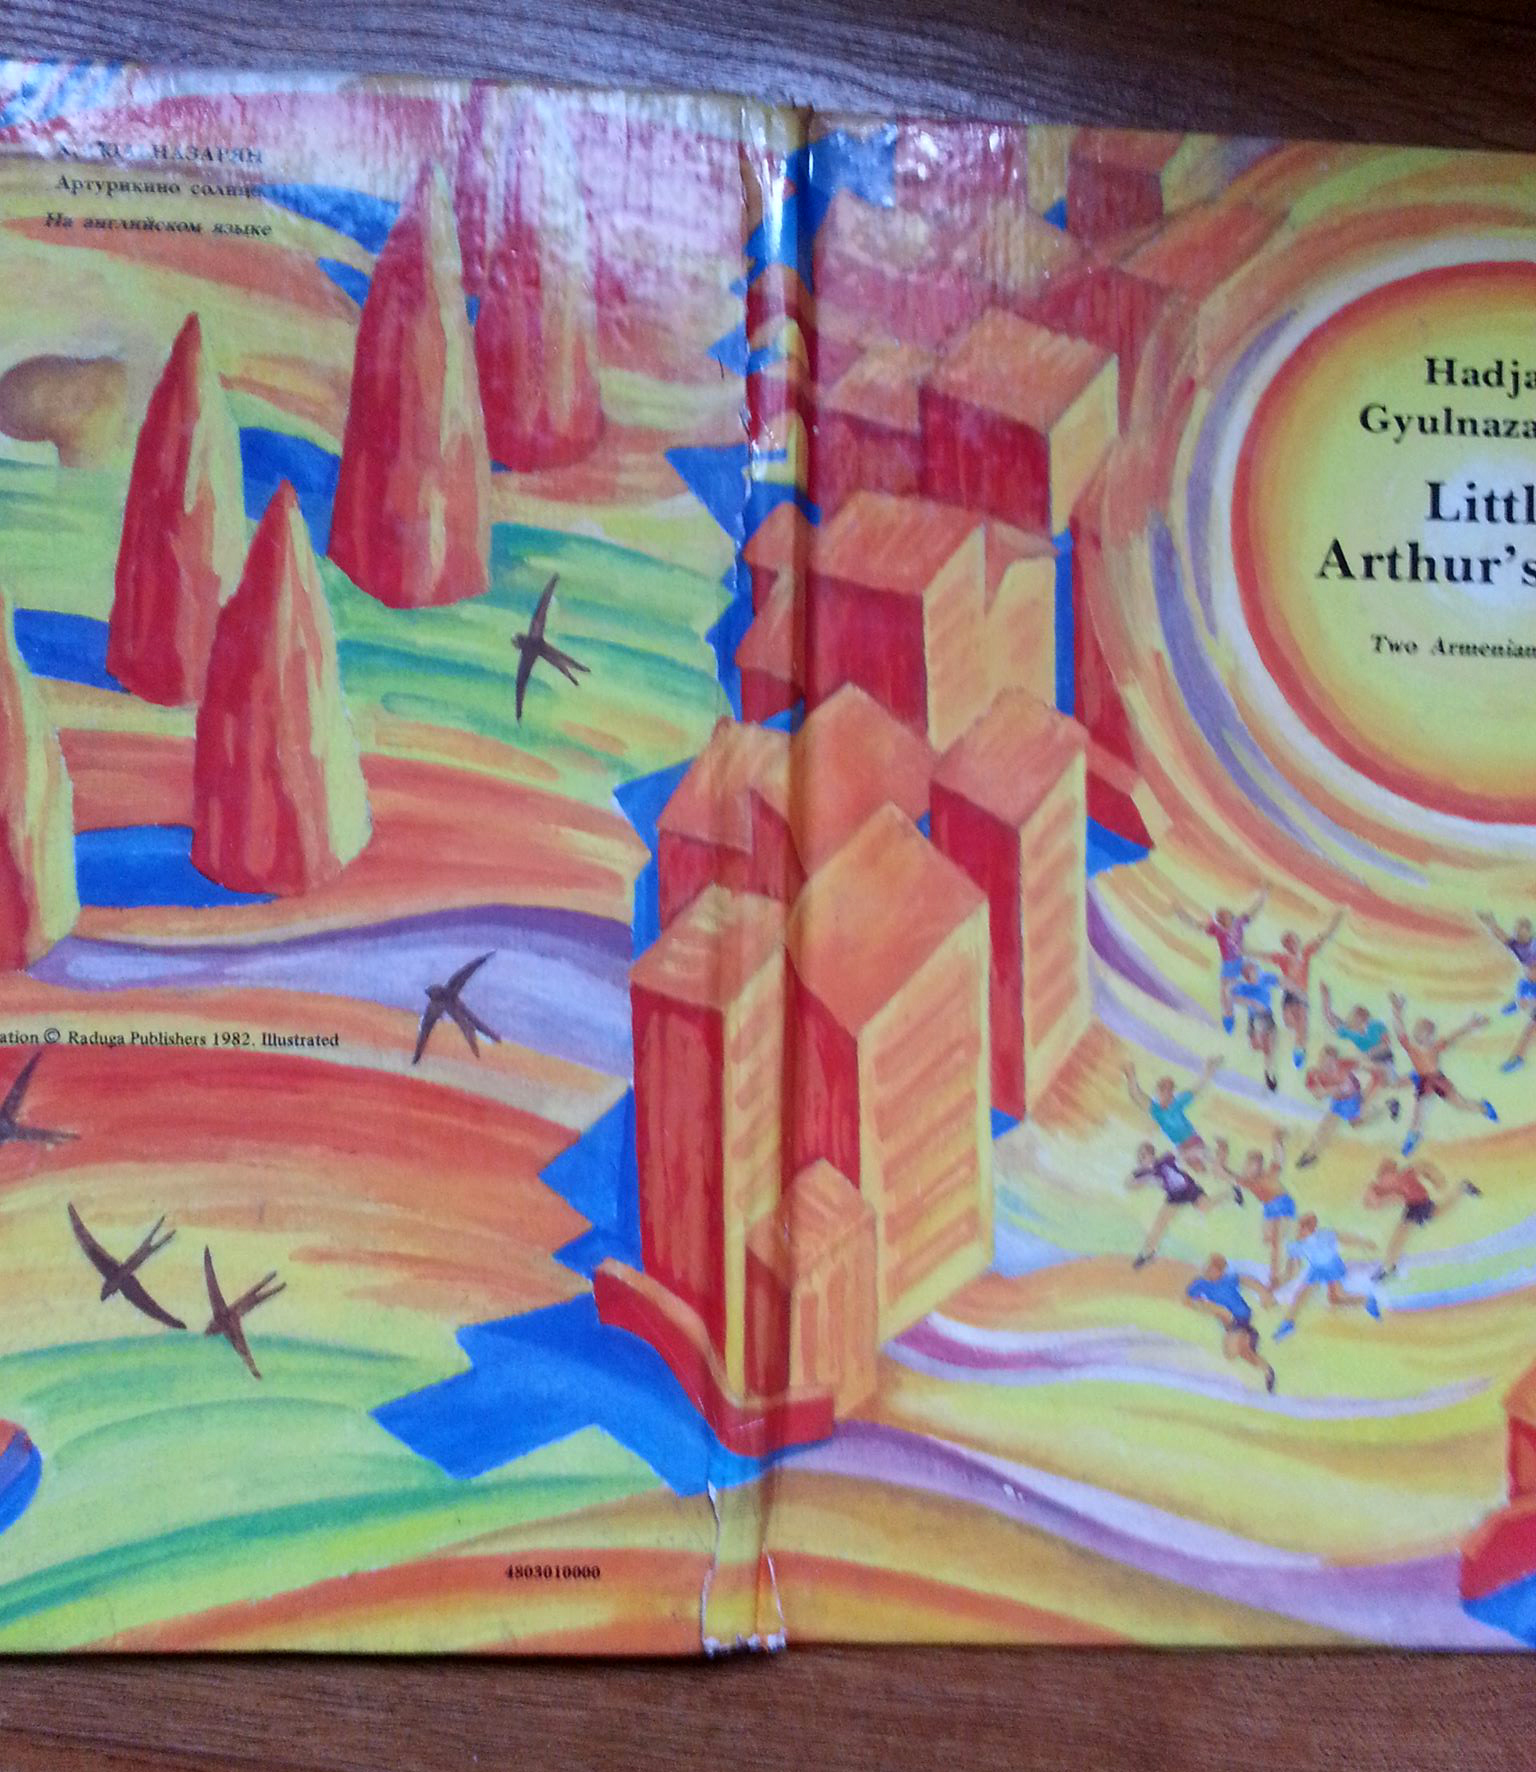 Little Arthur's Sun-Hadjak Gyulnazaryan